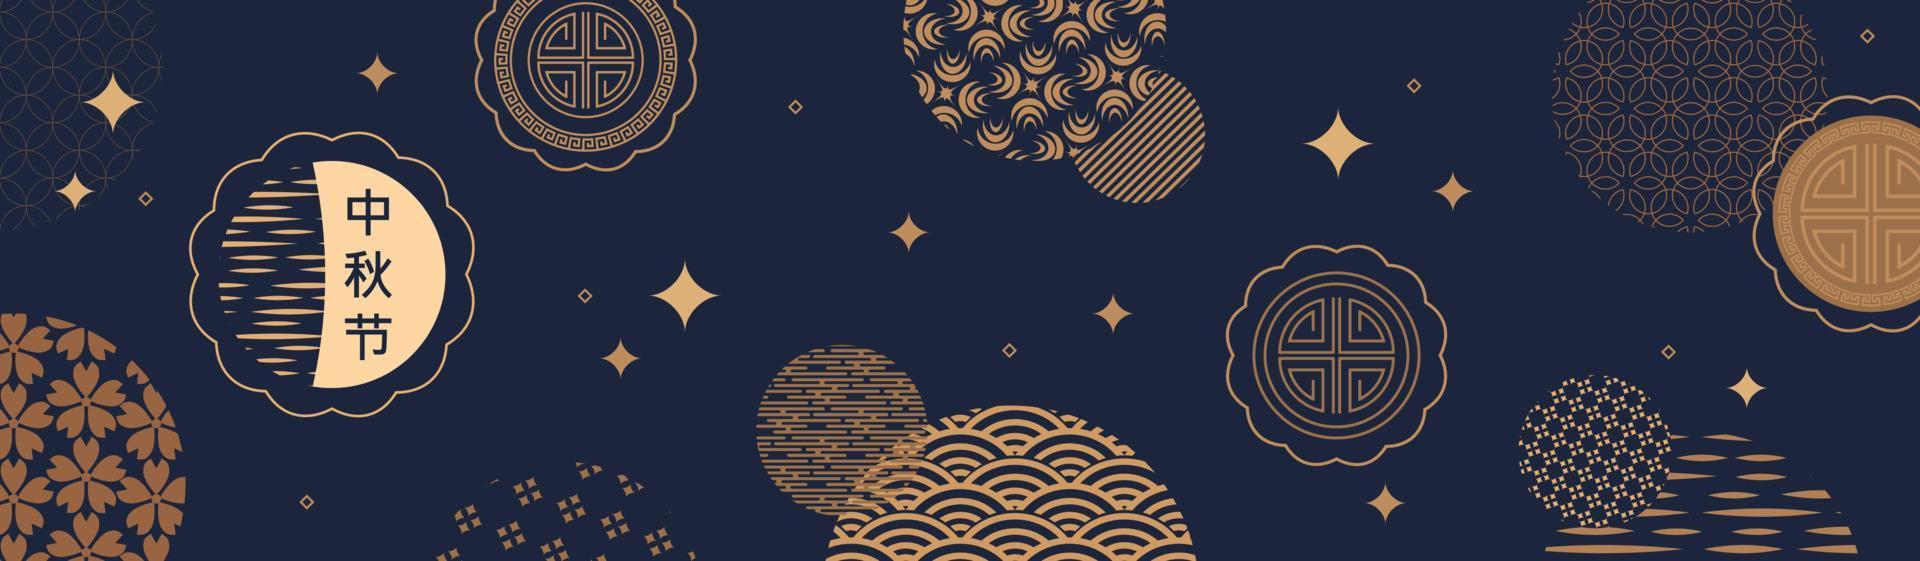 Bannerdesign mit traditionellen chinesischen Vollmondkreisen und Mondlebkuchen. Übersetzung aus dem Chinesischen - Mittherbstfest. Vektor-Illustration vektor